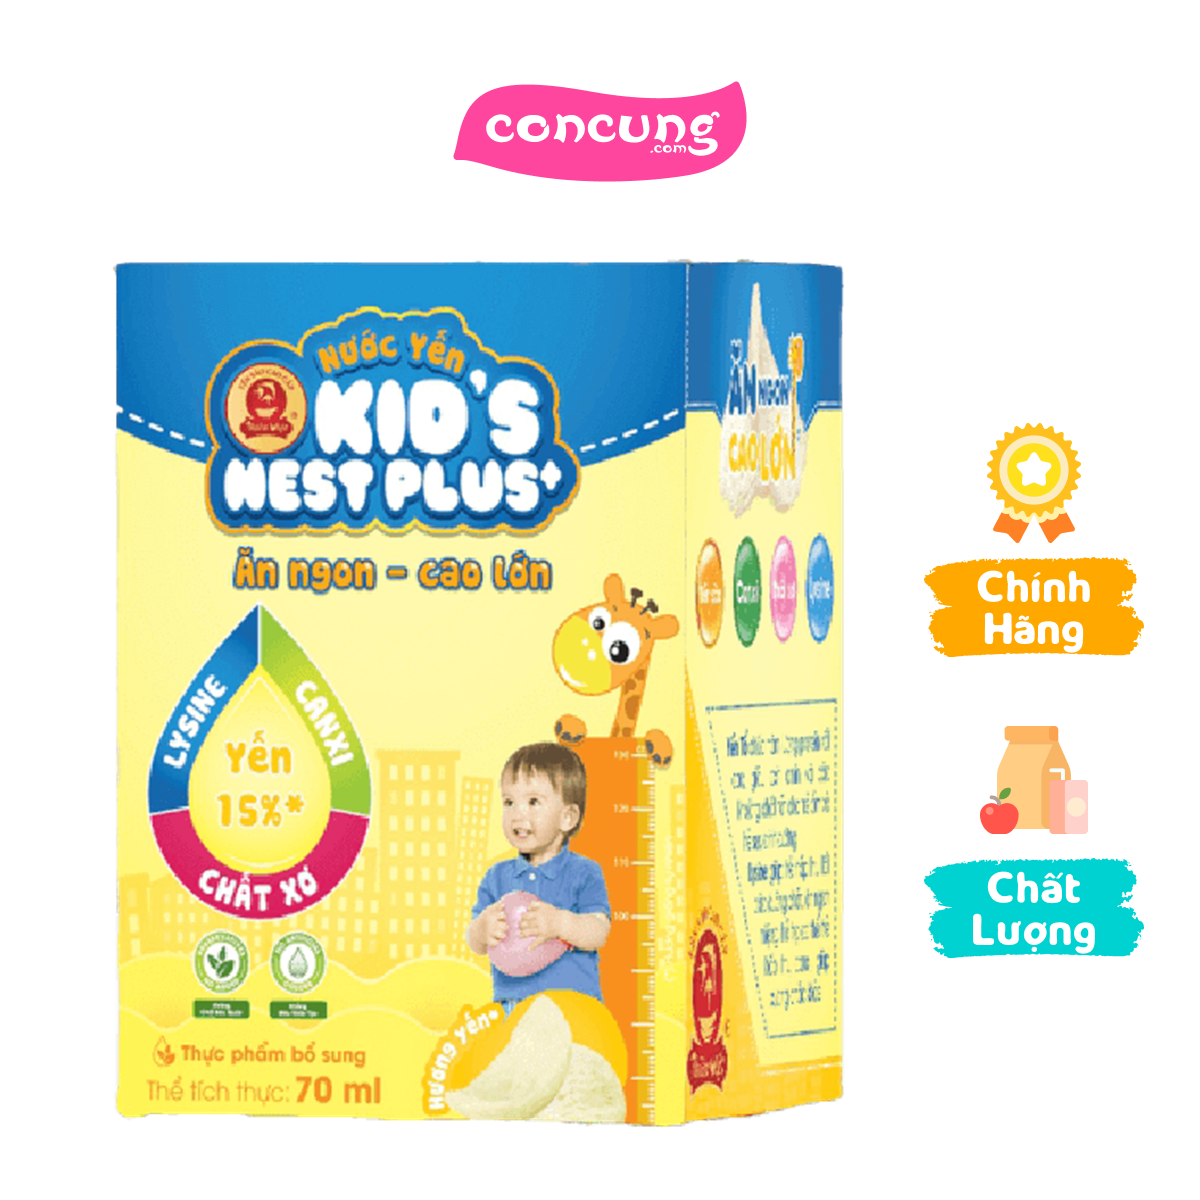 Thực phẩm bảo vệ sức khỏe - Nước yến Kids Nest Plus+ hương tự nhiên Lốc 3+1